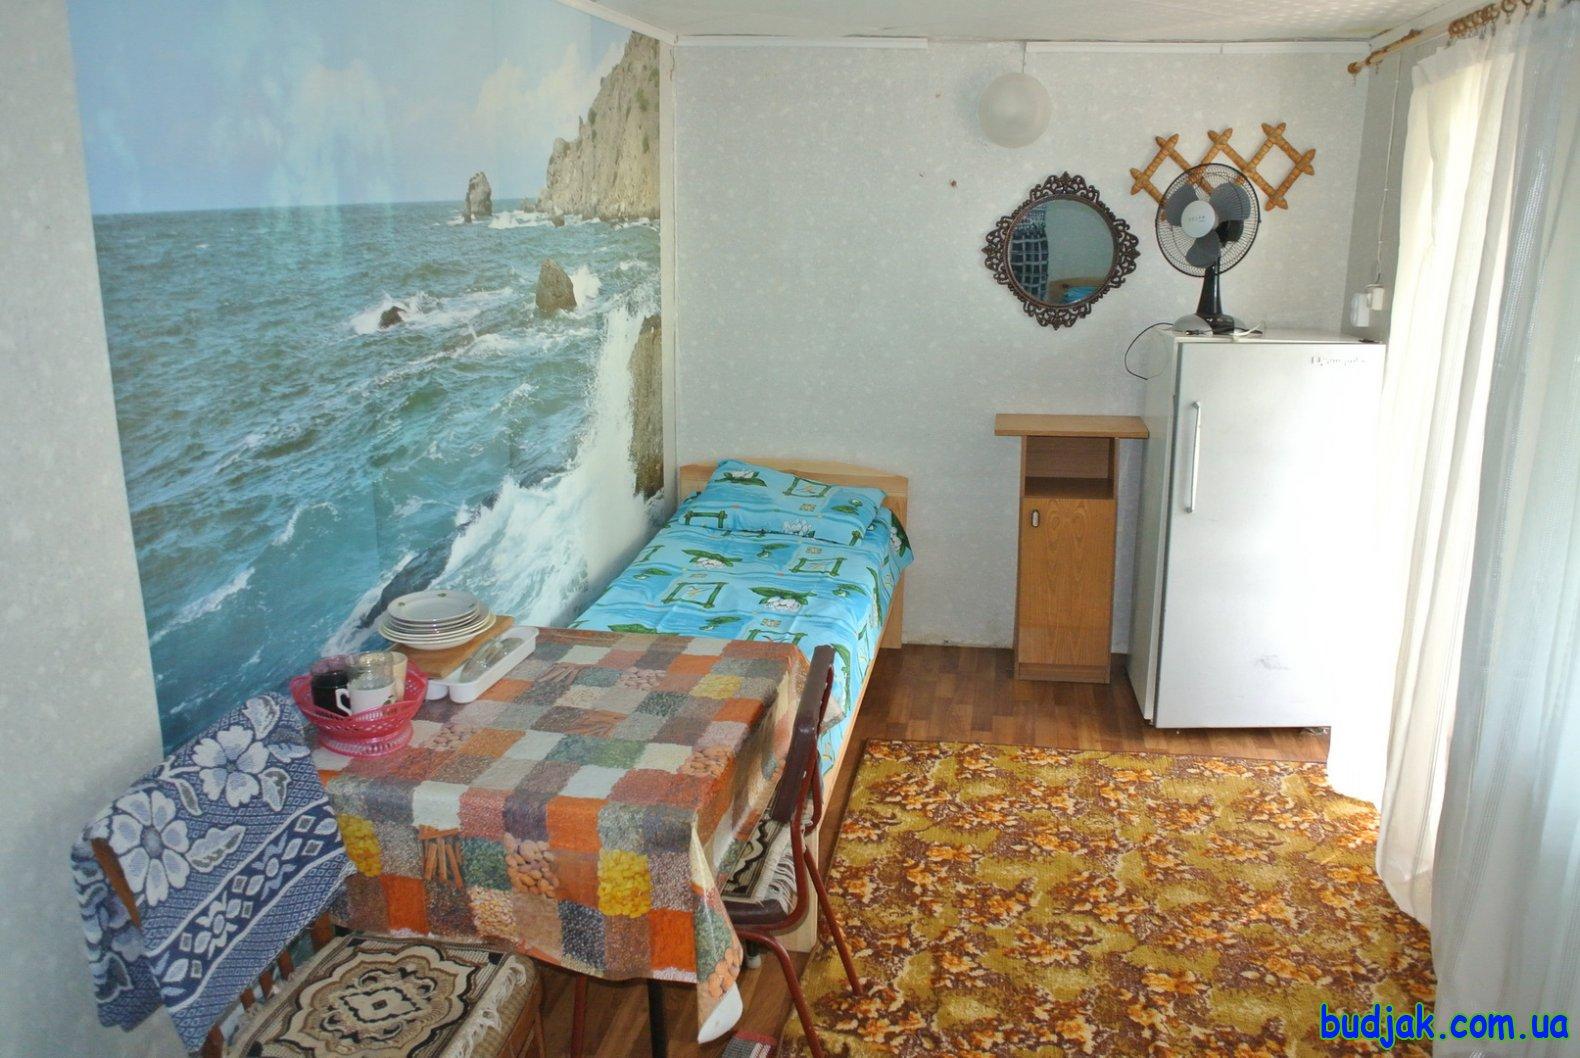 Частный коттедж отдыха «Дубовая роща» на курорте Лебедевка. Фото № 10985